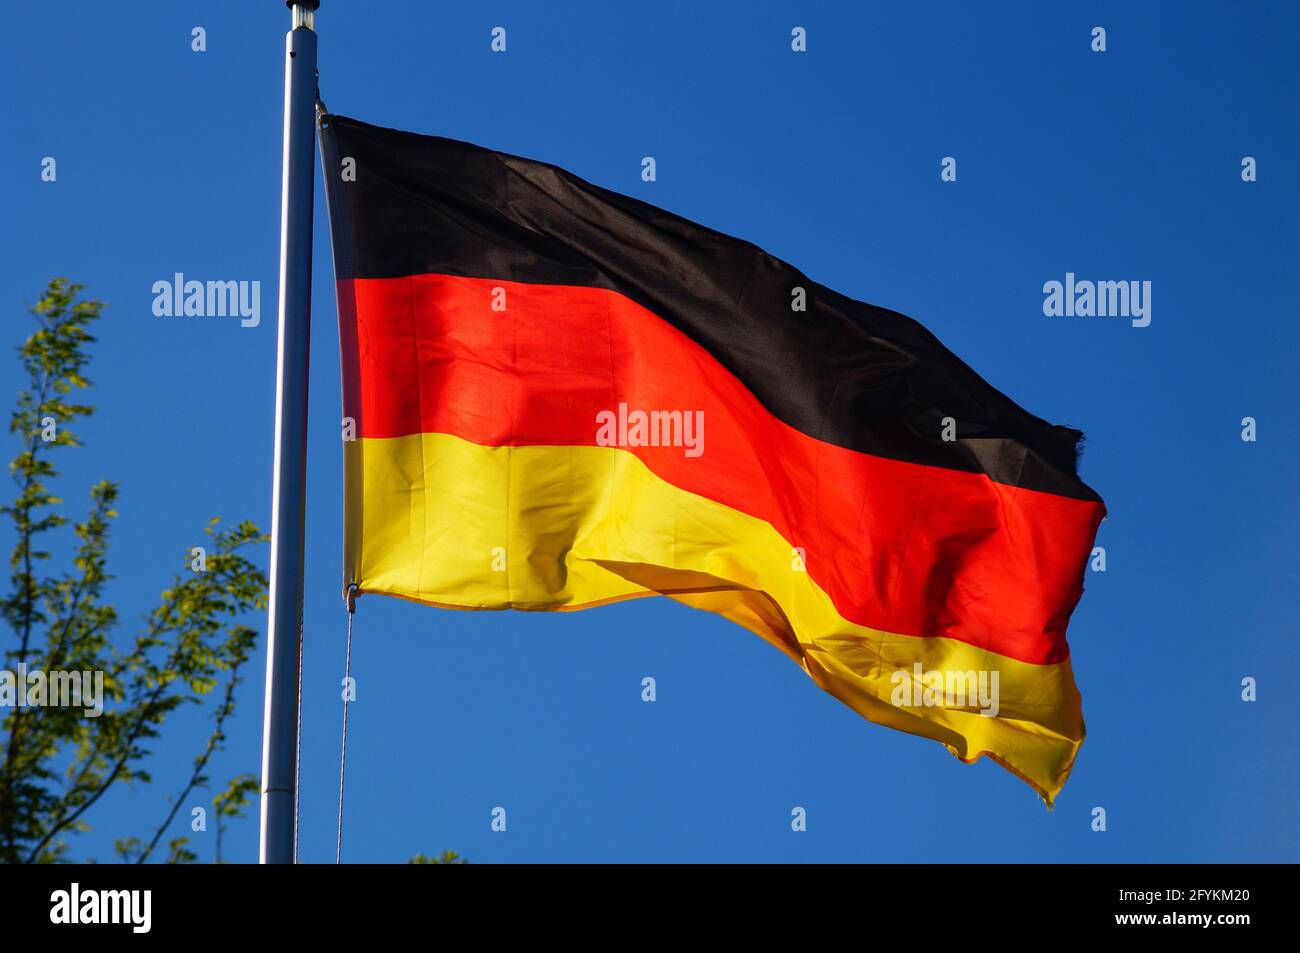 La bandera alemana vuela a la luz de la noche. Foto de stock